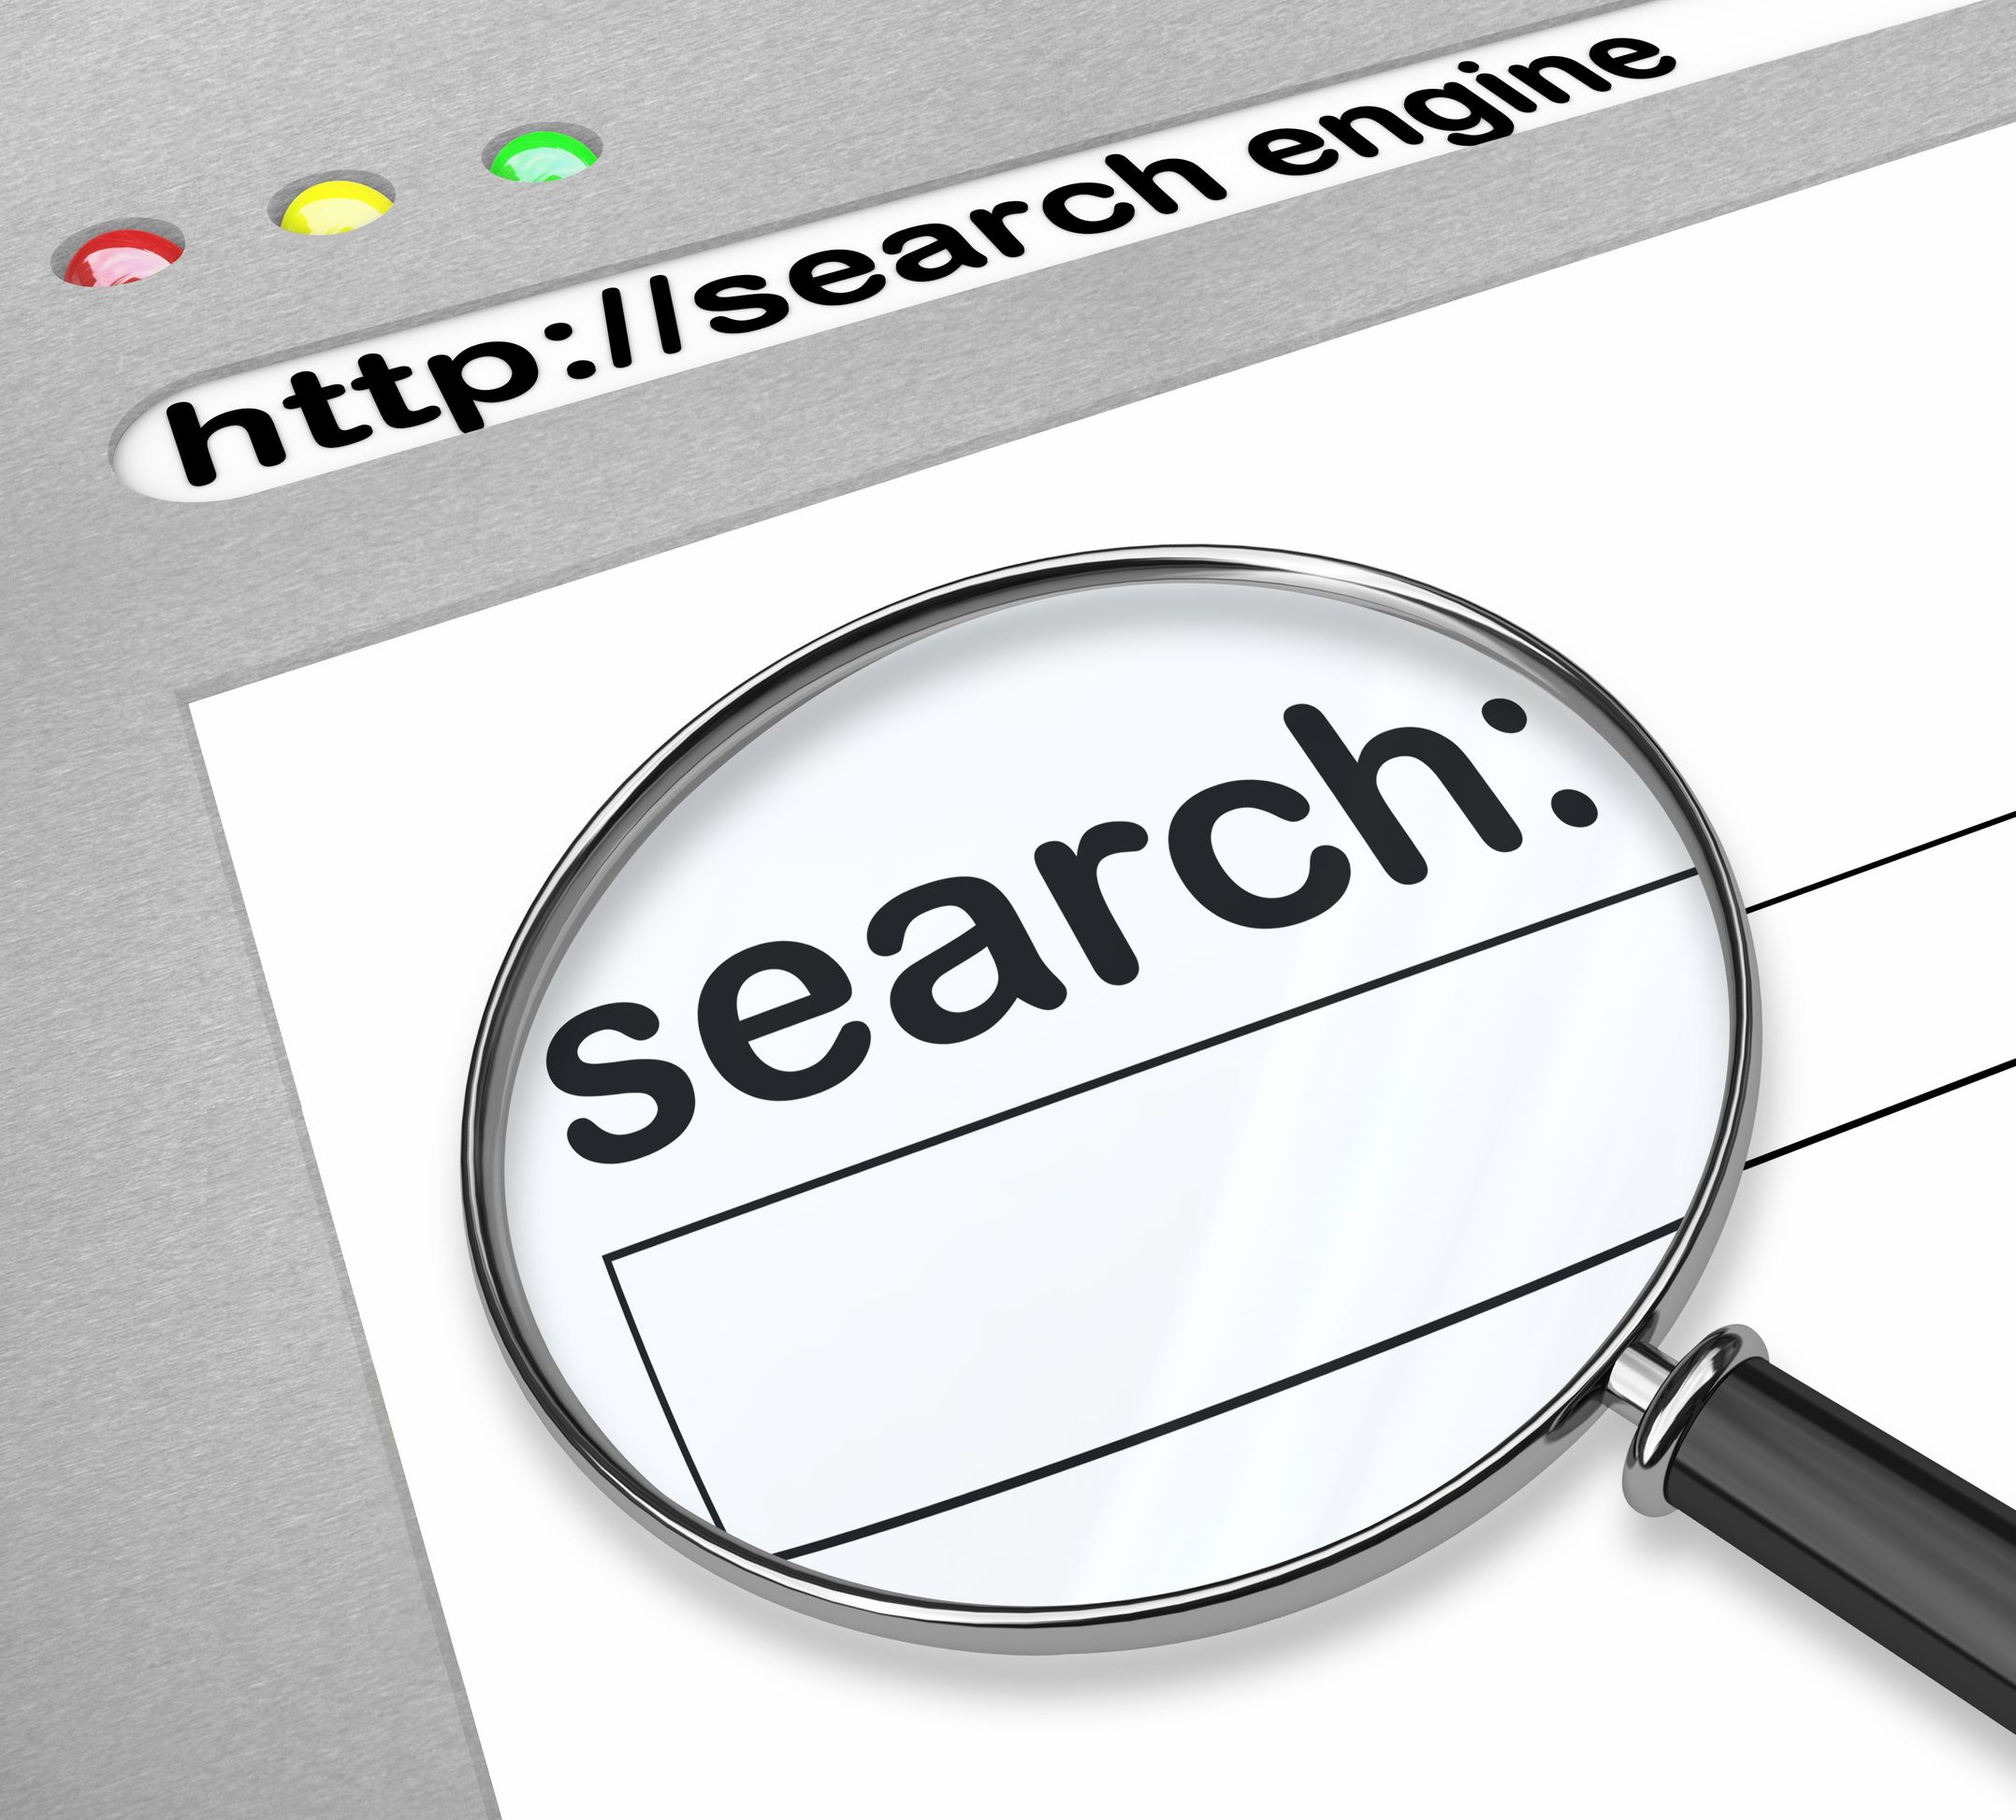 Web search engine. Информационно-поисковые системы. Search Поисковая система. Поисковые системы картинки. Поиск картинки в интернете.